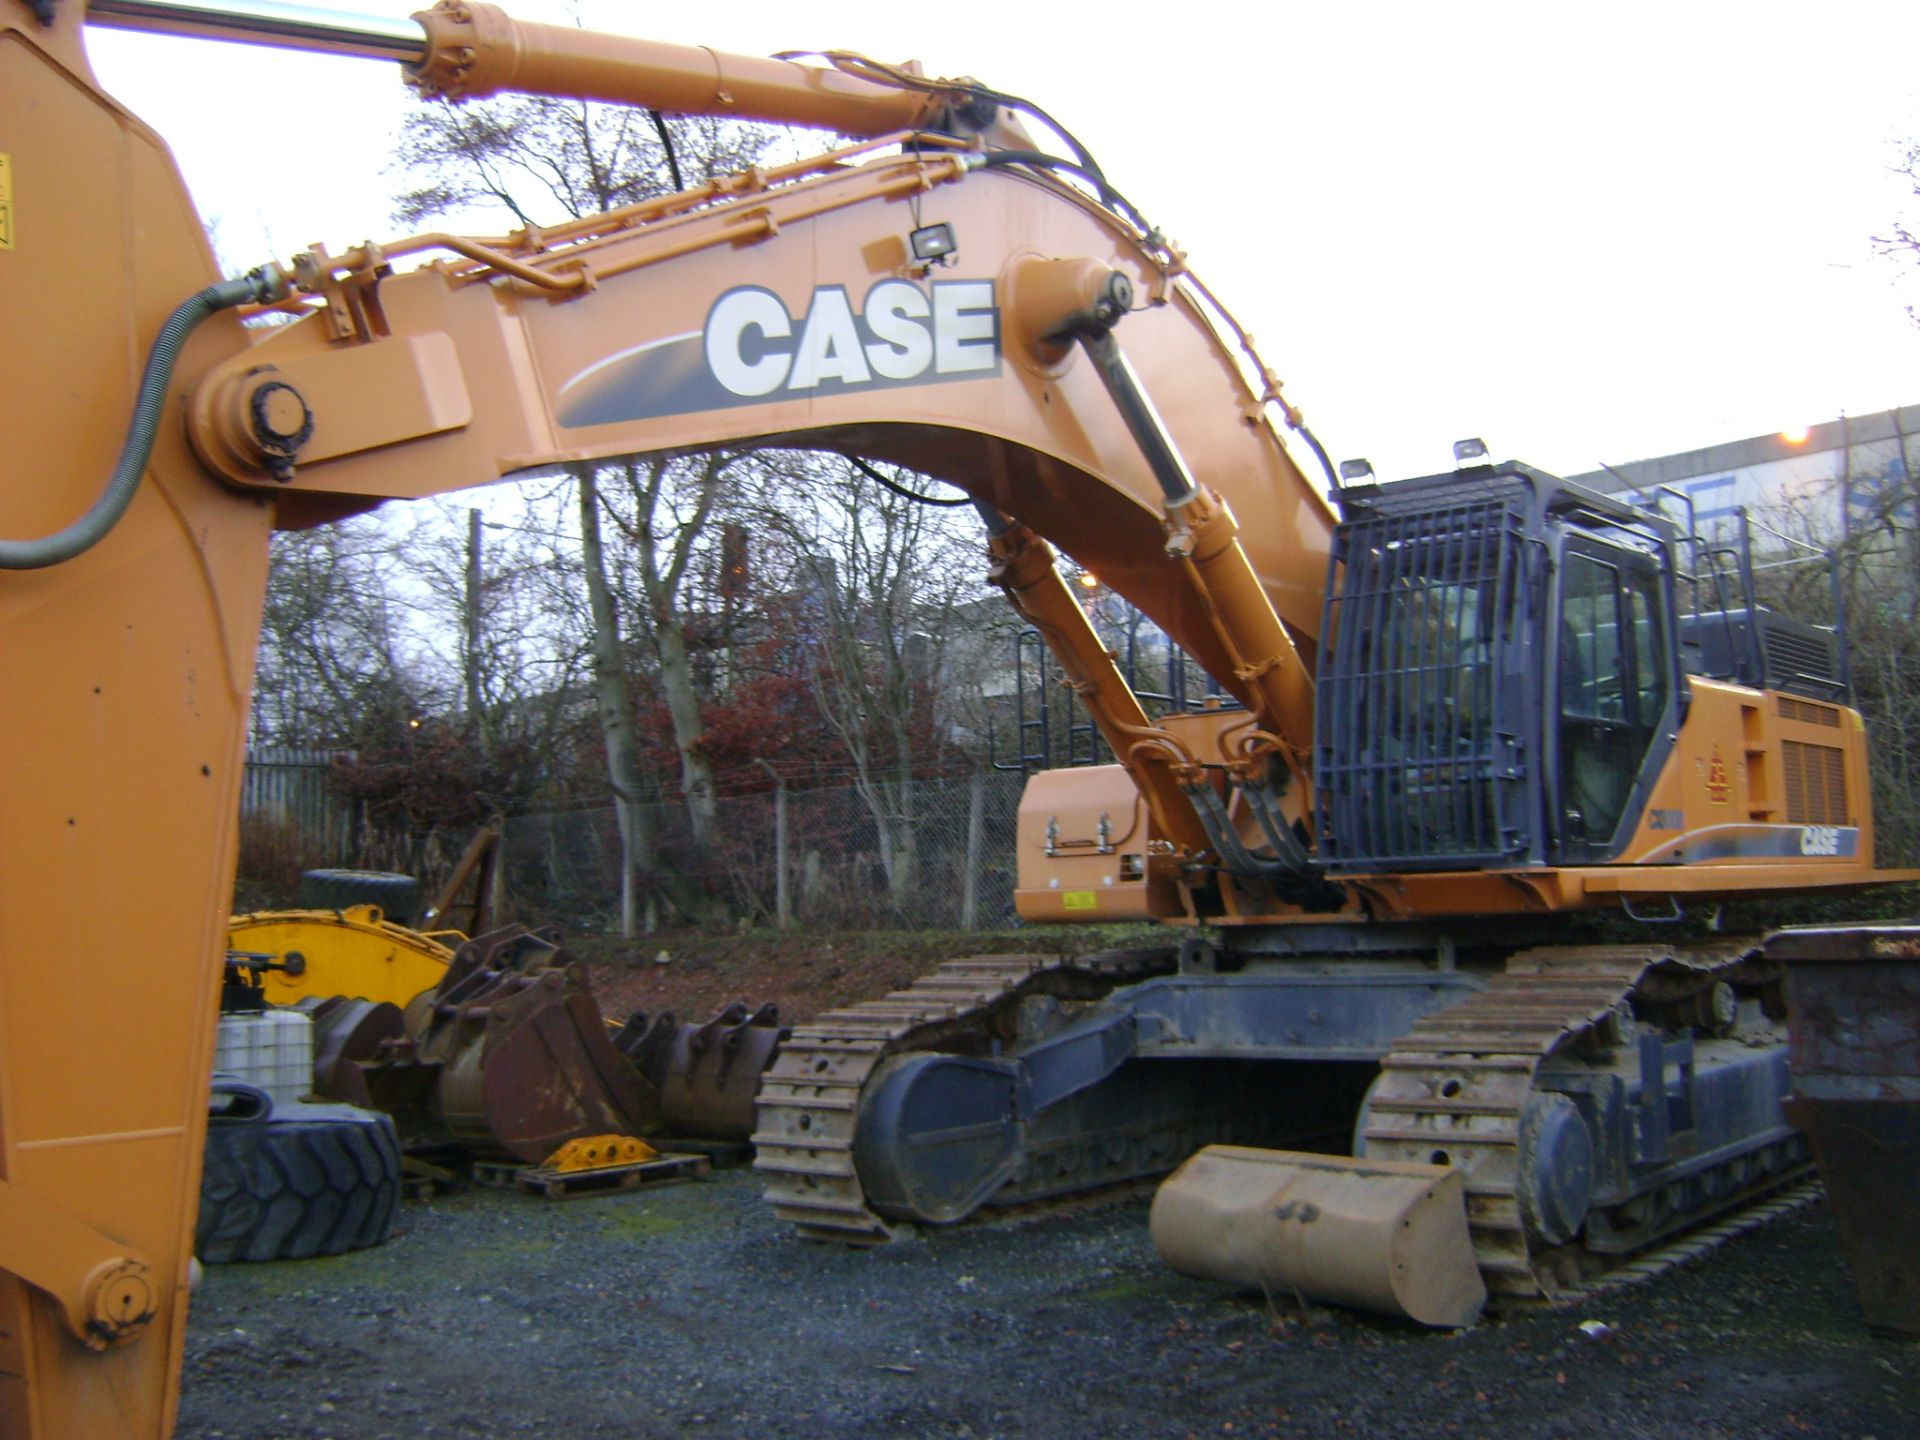 Case CX800 Tracked 80Ton Excavator - Image 2 of 7